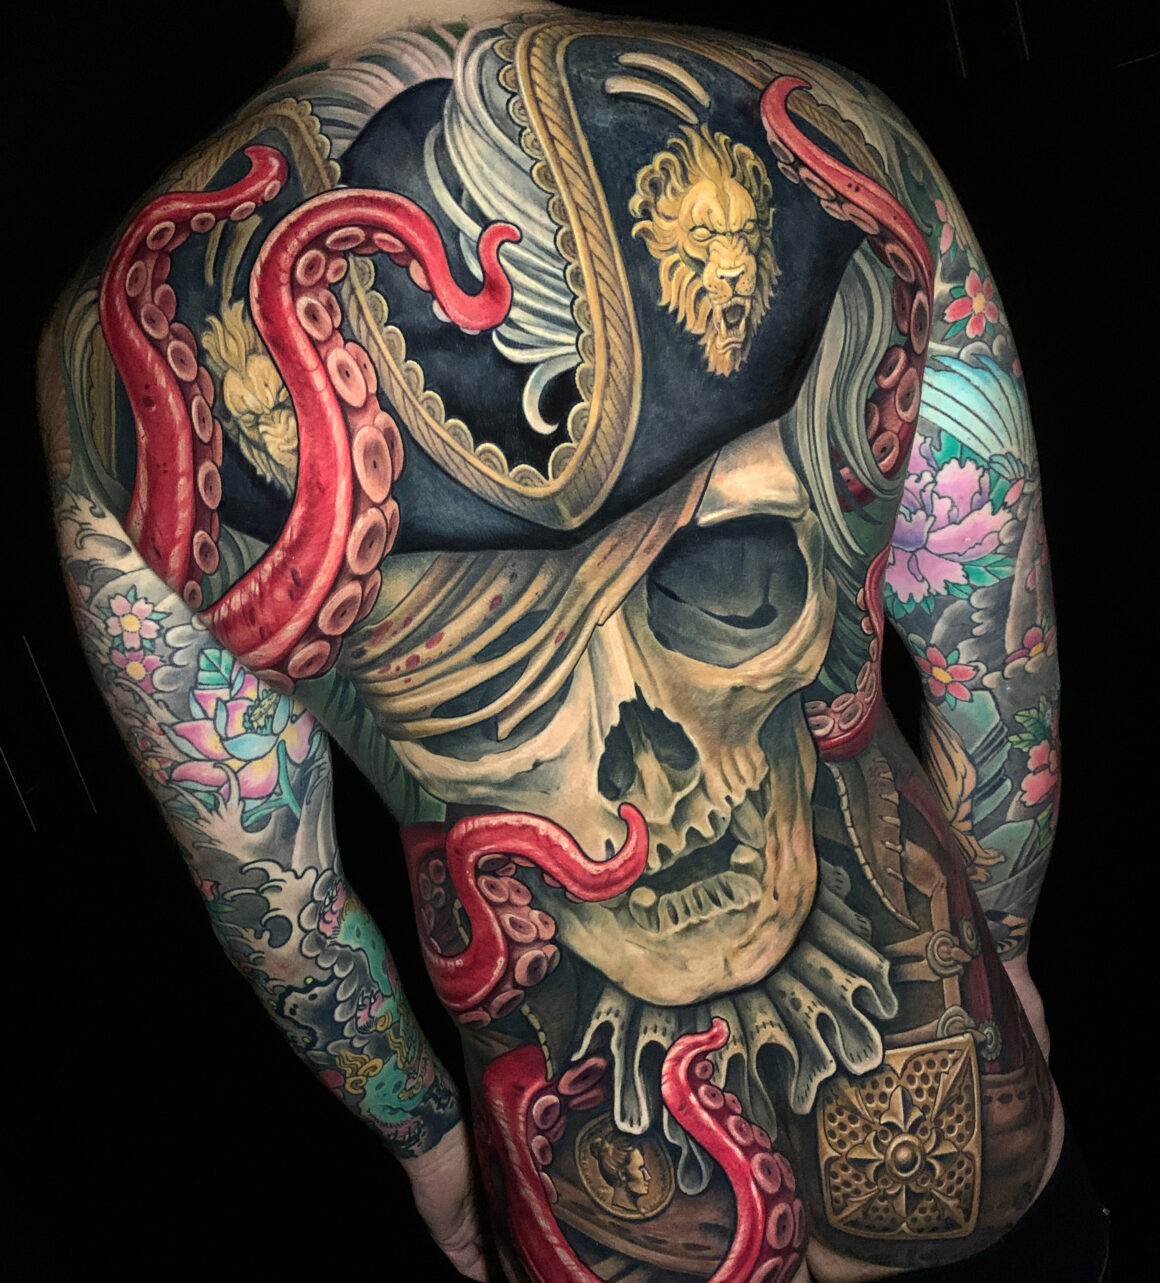 Julian Siebert, Corpsepainter Tattoo, Munich, Germany